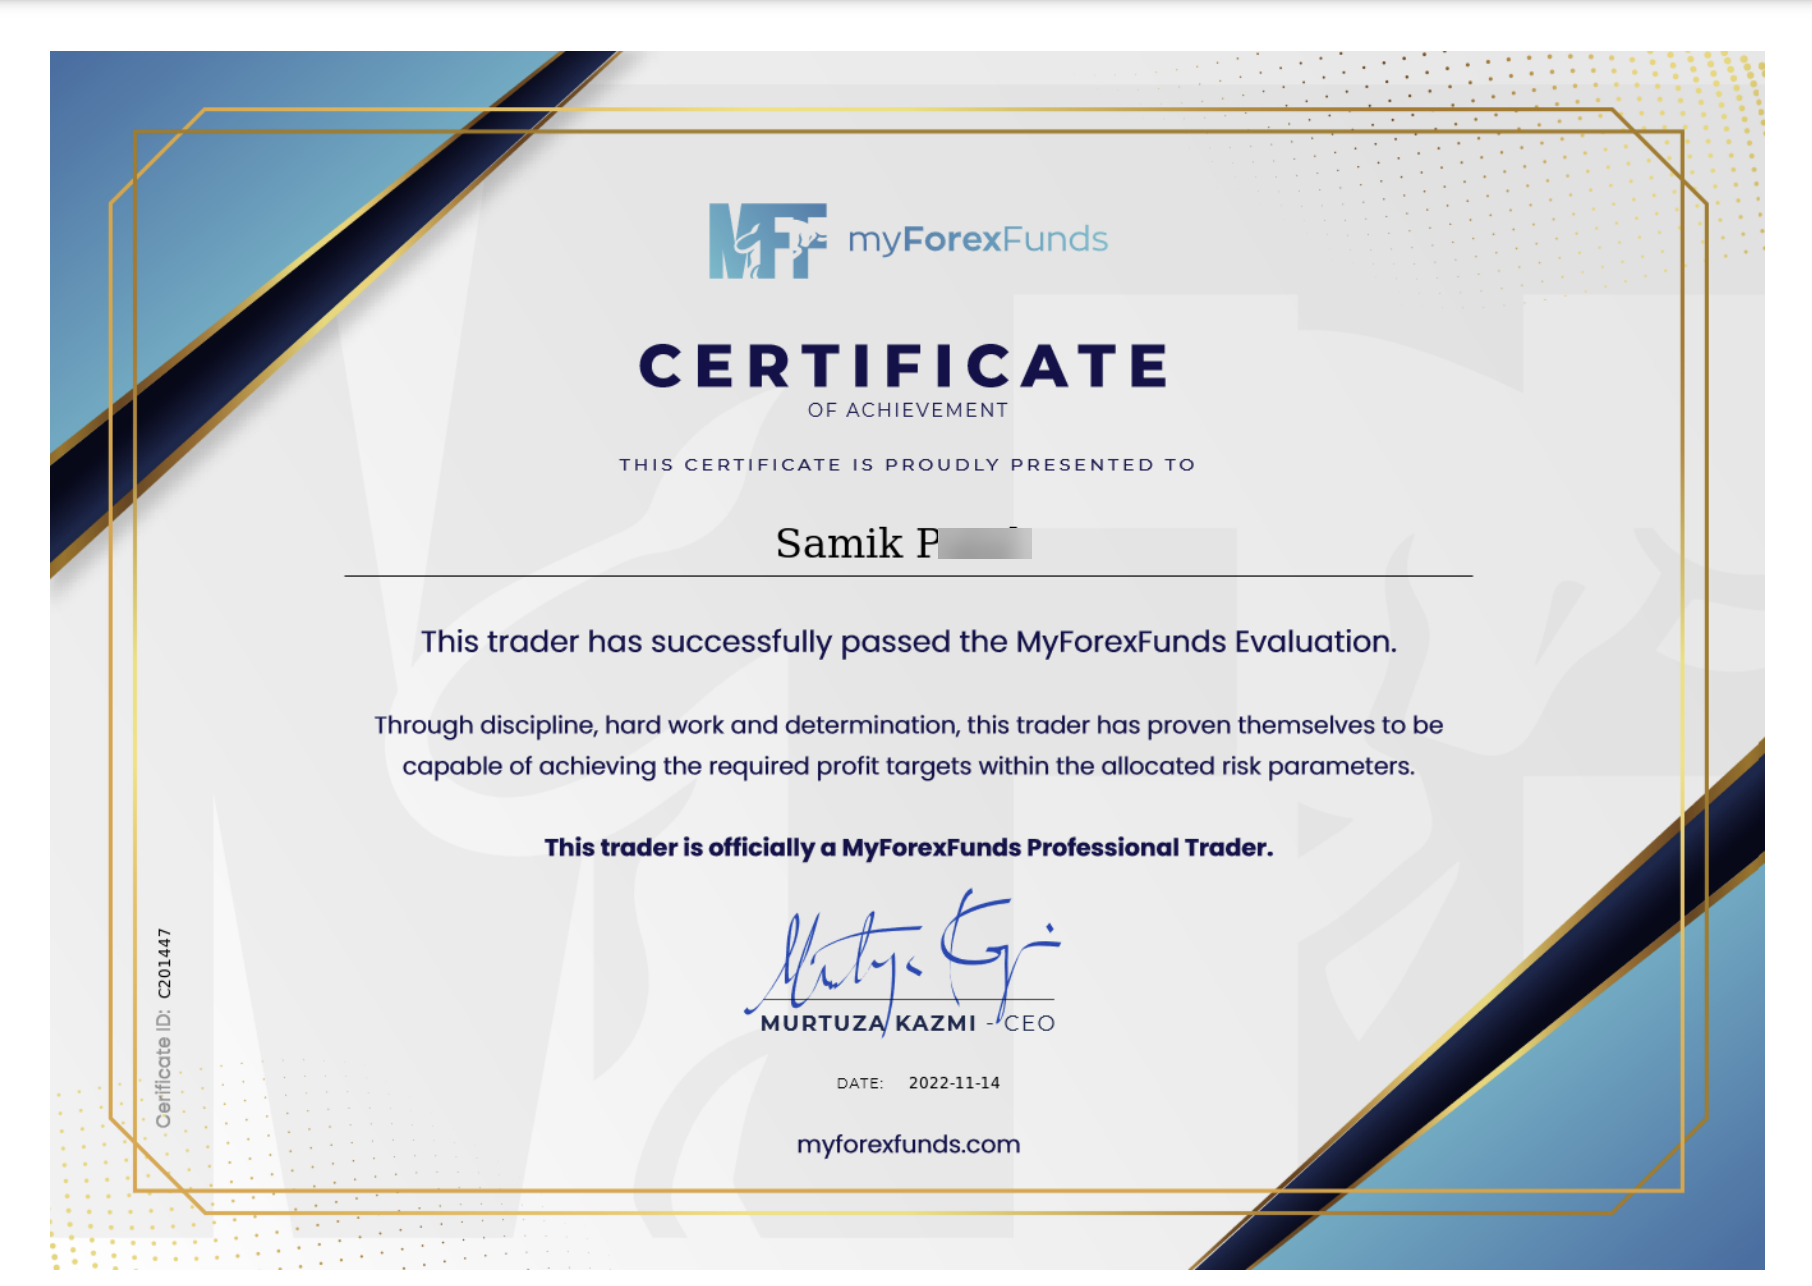 Sam Patel Myforexfunds.com Funded Trader Certificate